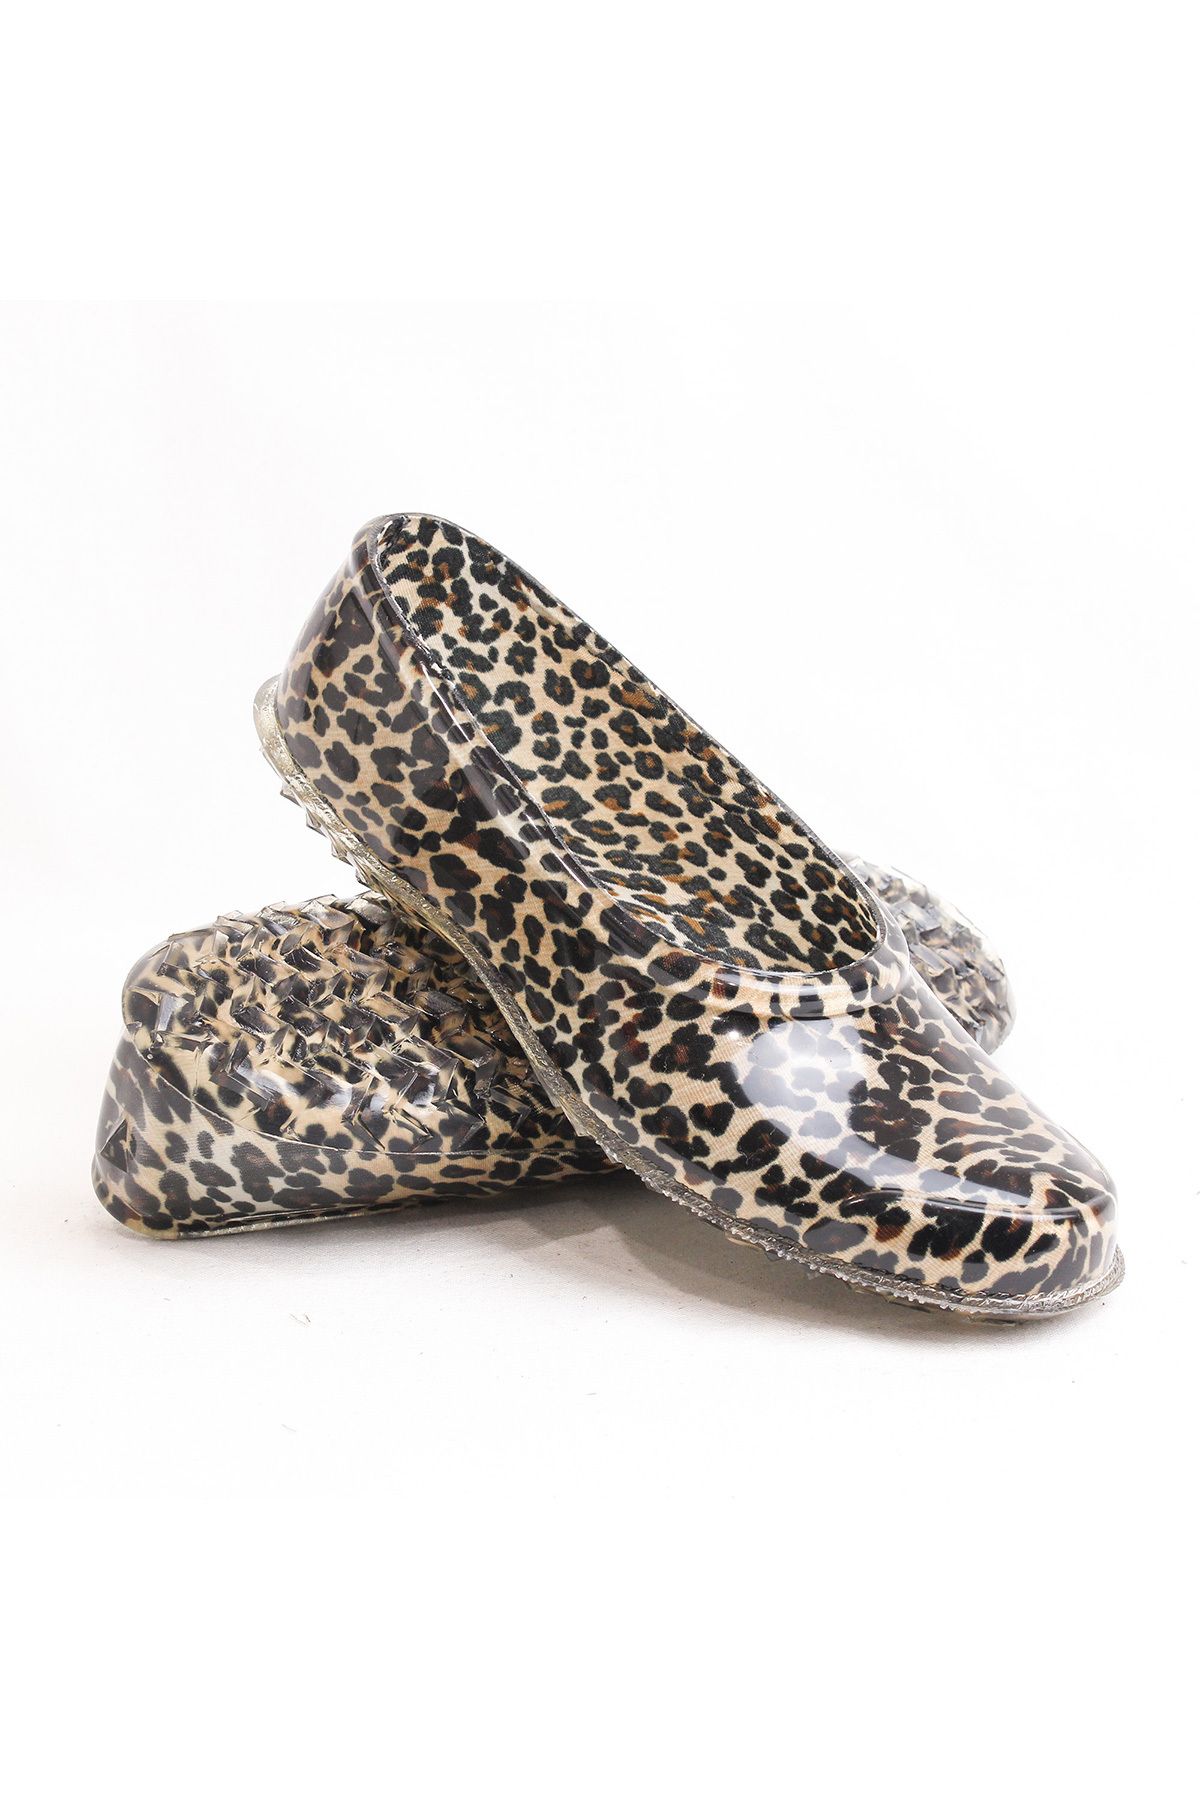 ARISAN Arısan Leopar Desenli Şeffaf Plastik Ayakkabı